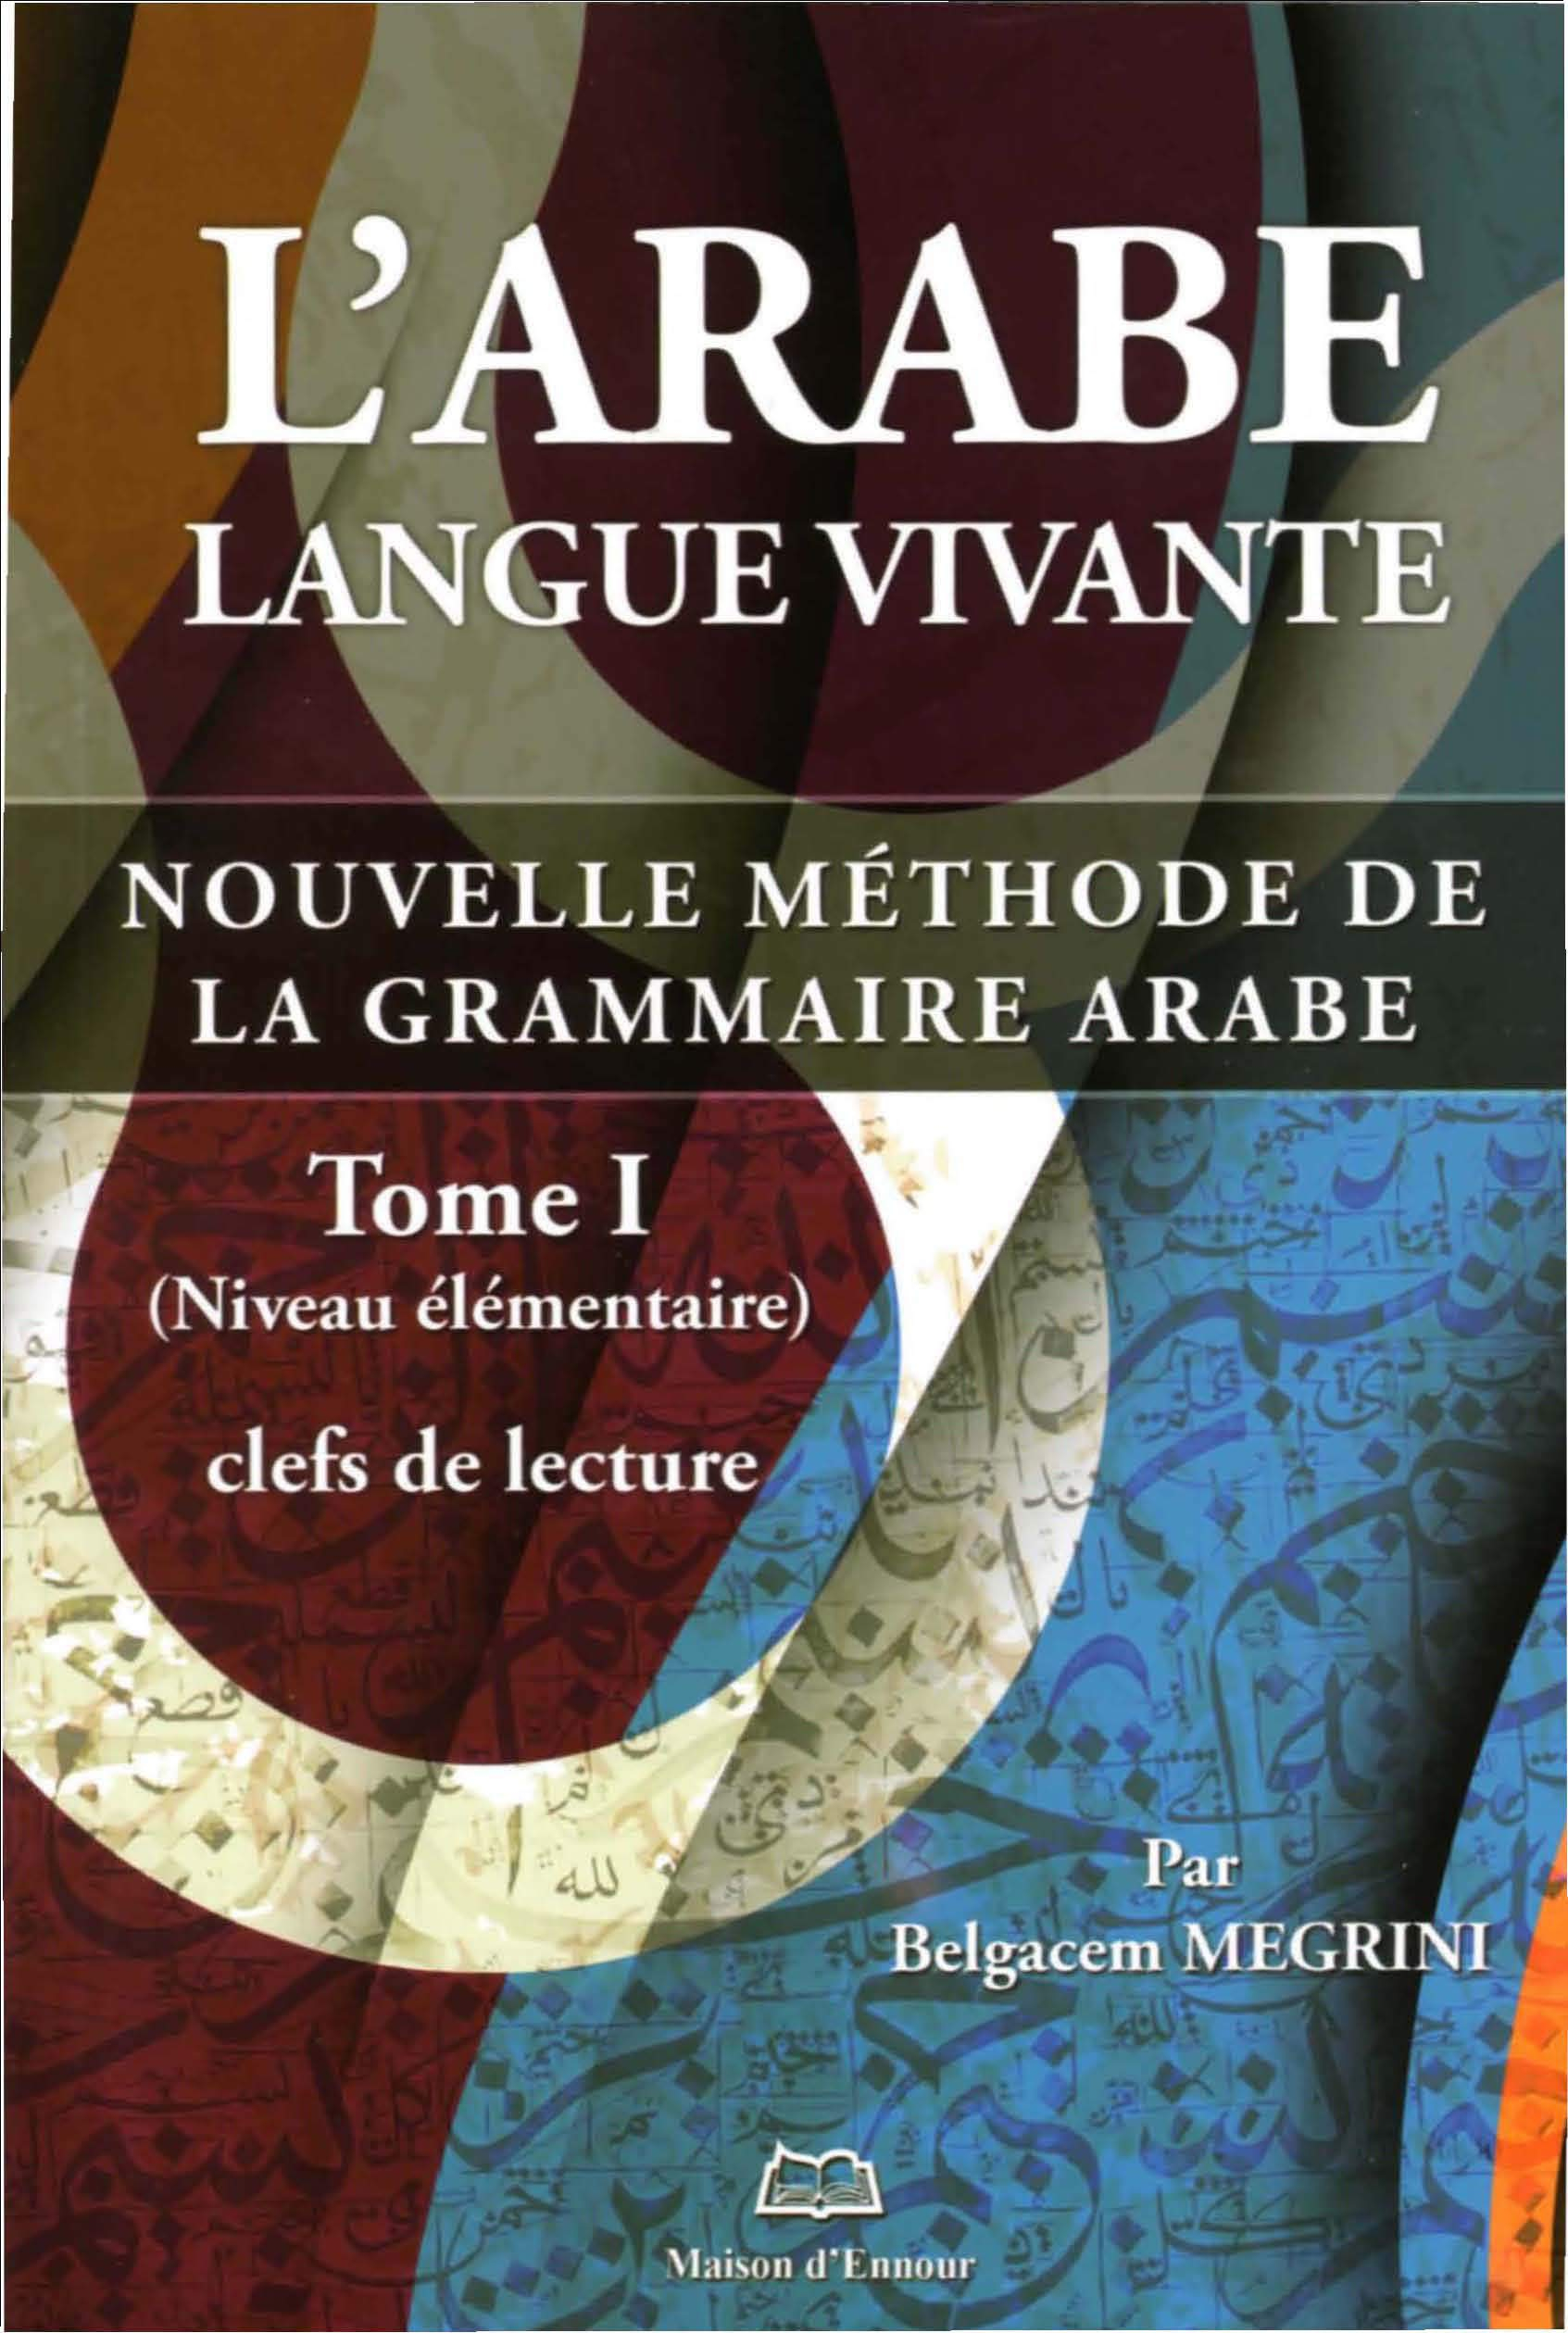 L'arabe langue vivante : nouvelle méthode de la grammaire arabe. Vol. 1. Clefs de lecture : niveau é